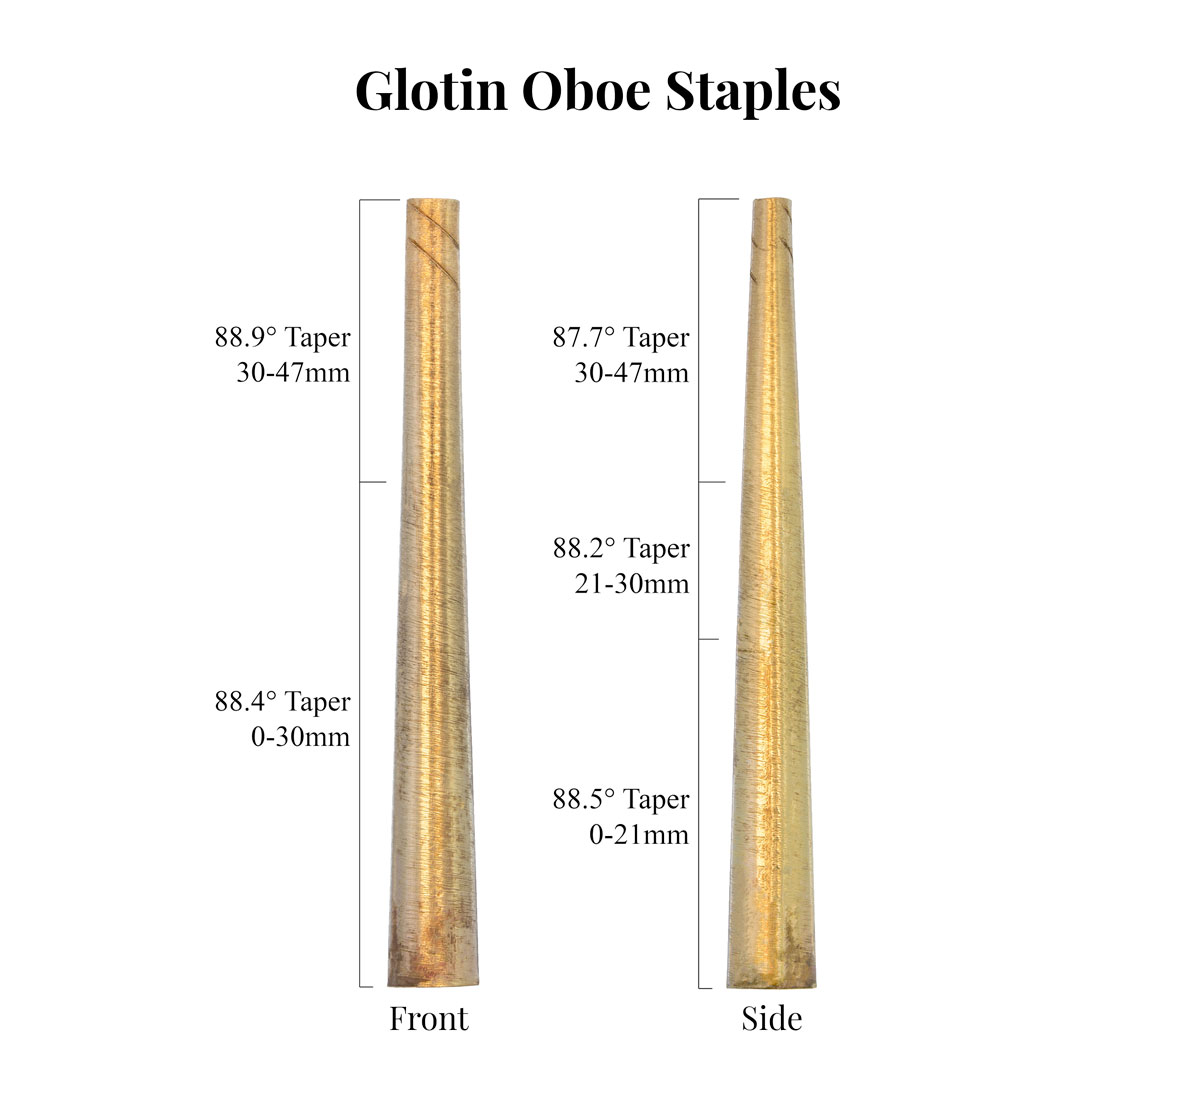 Glotin Oboe Staples Taper Comparison